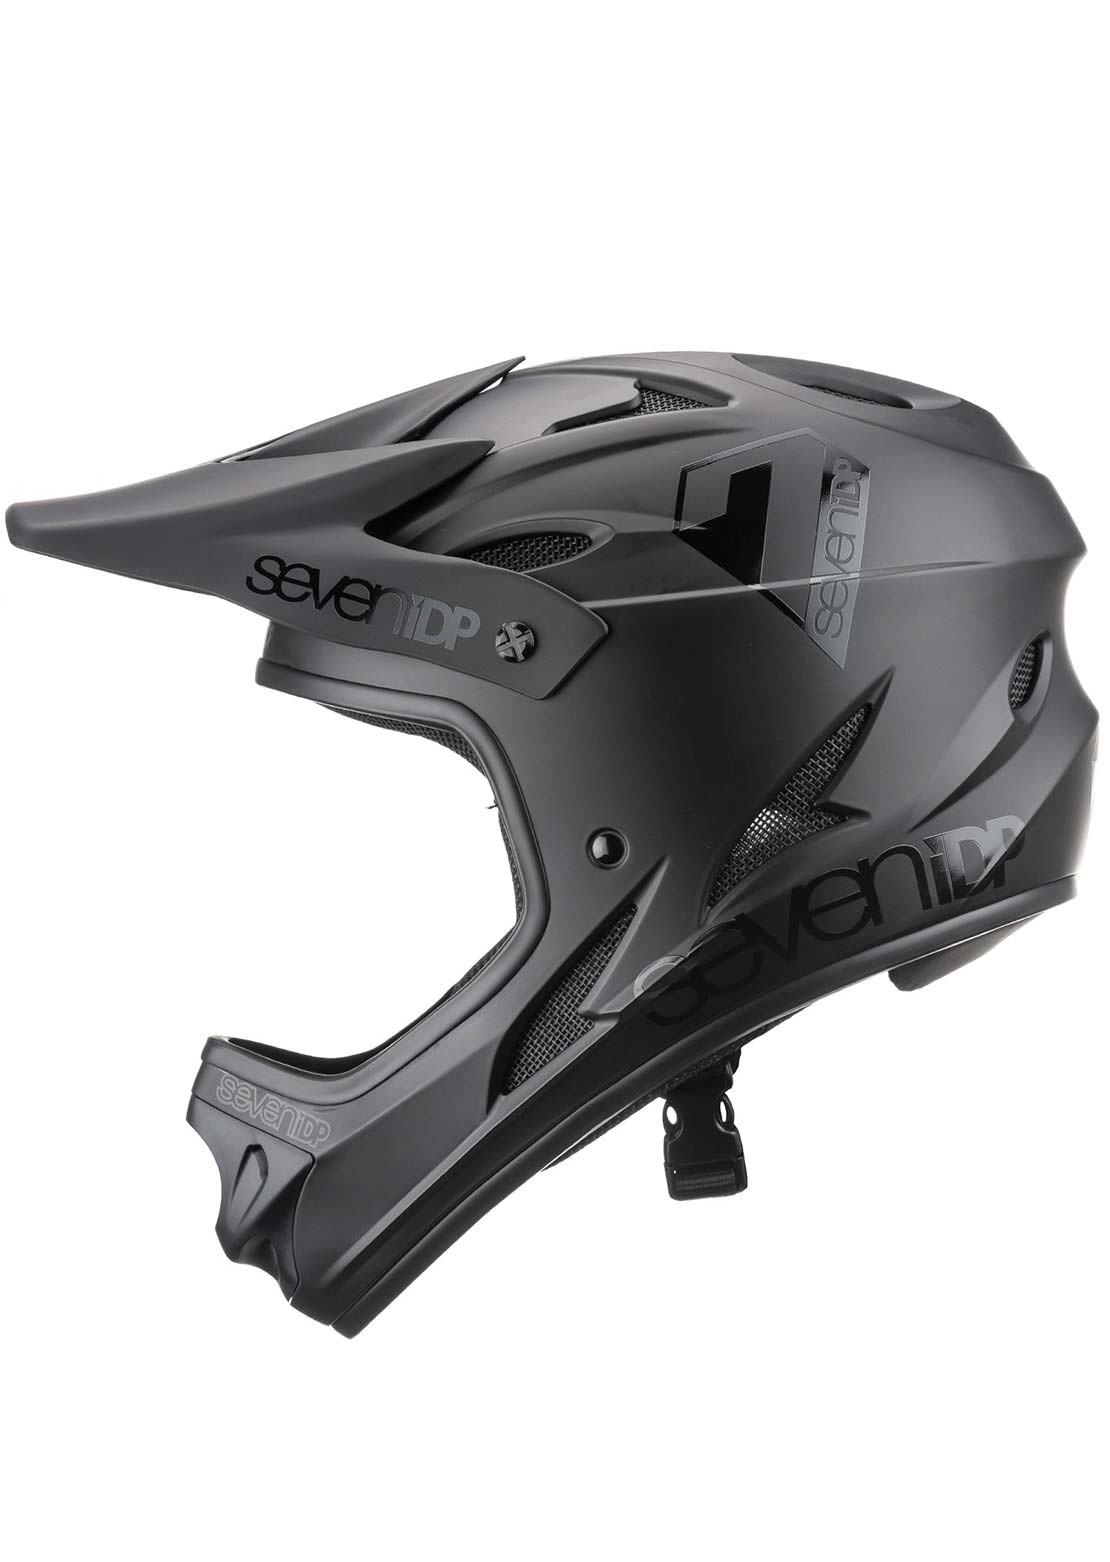 7iDP M1 Full Face 57 Downhill Helmet - 58cm Matte Black/Gloss Black